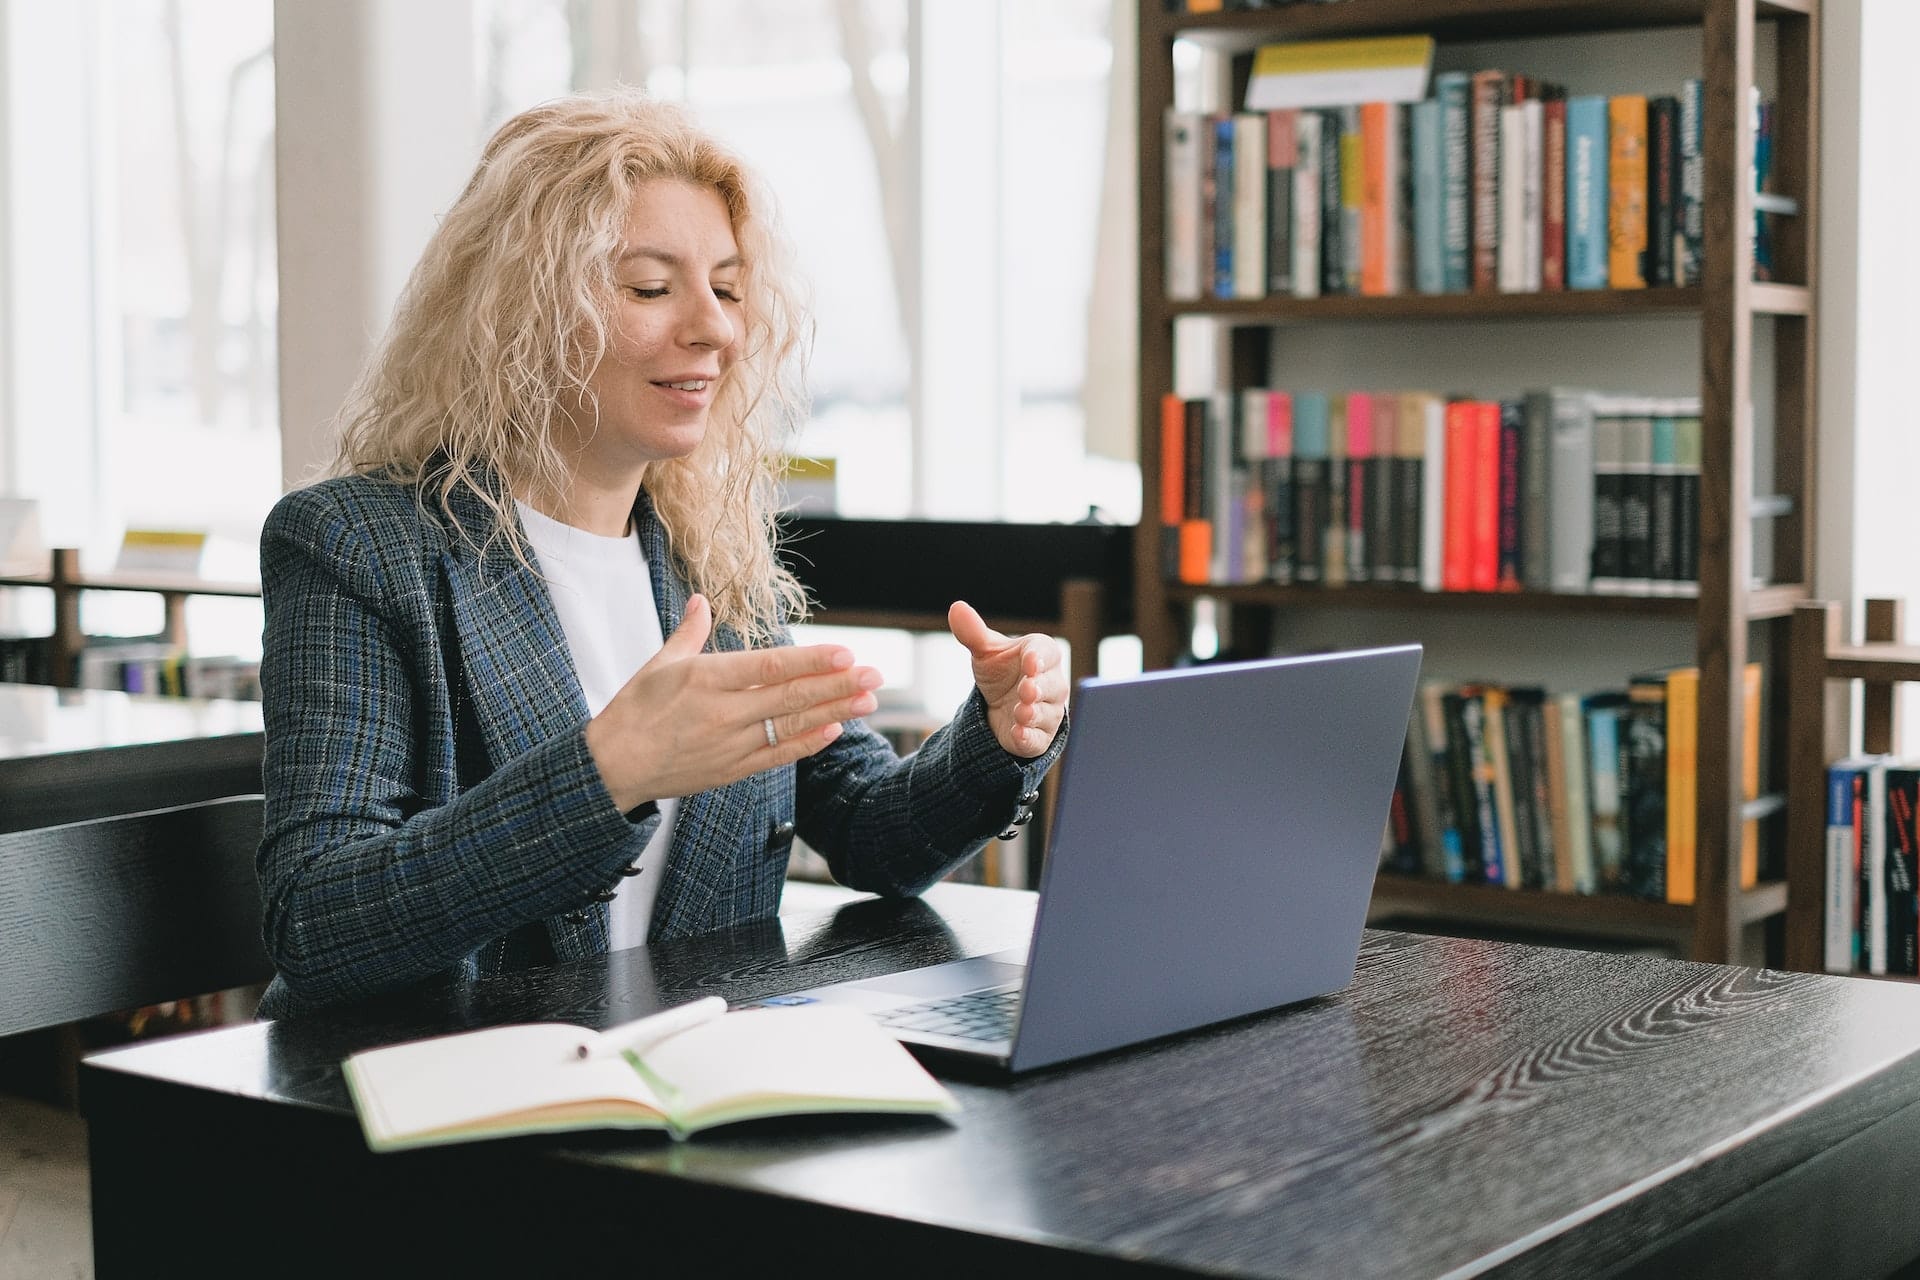 une femme devant un ordinateur portable, carnet sur la table, une bibliothèque en arrière-plan